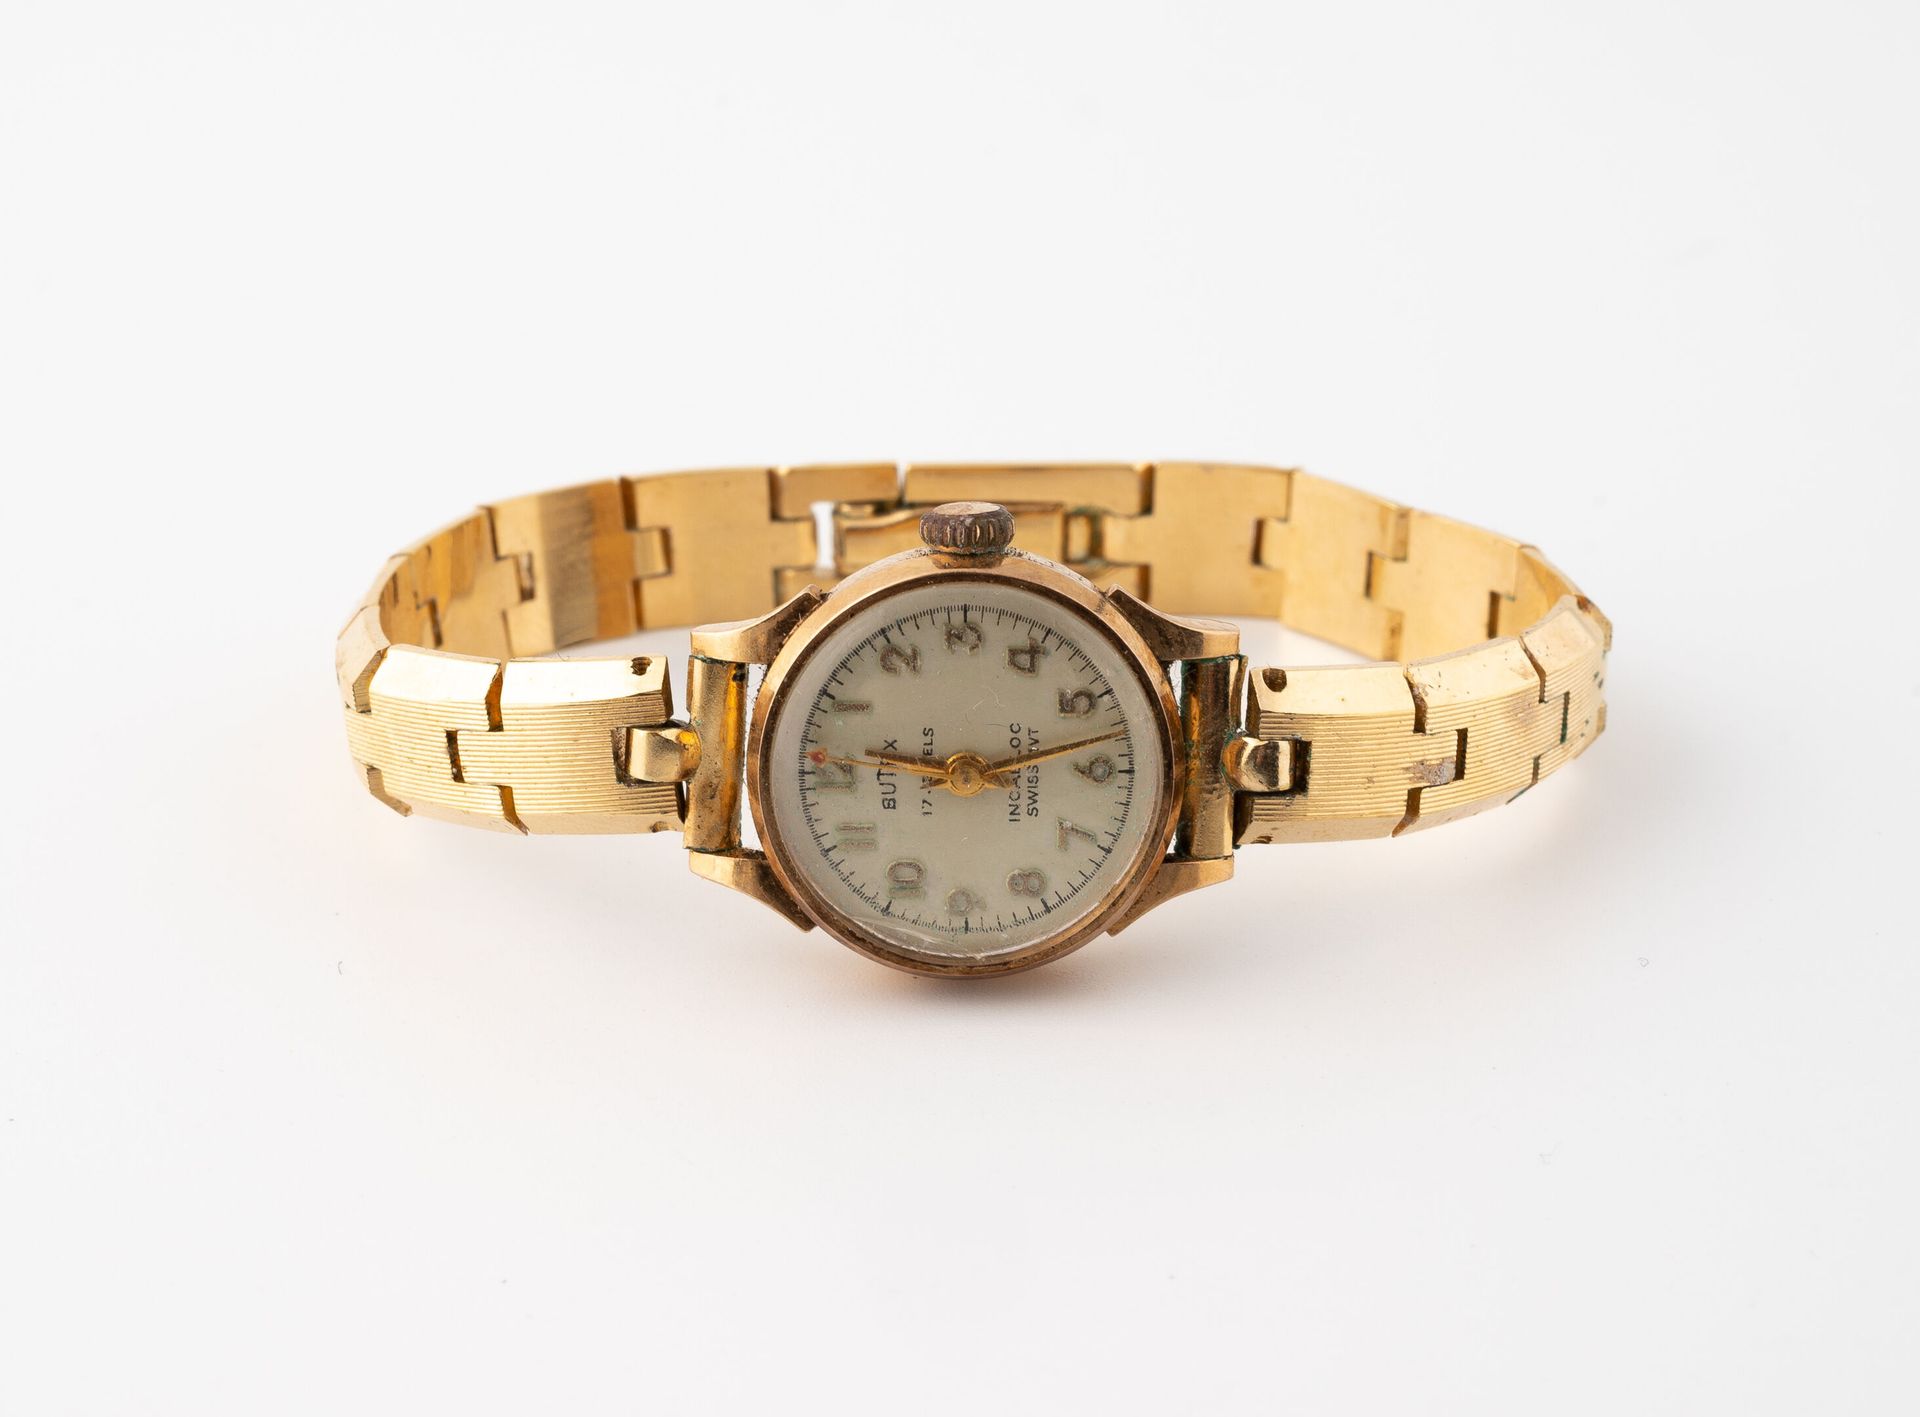 BUTEX Reloj de pulsera para señora.
Caja redonda de oro amarillo (750).
Esfera d&hellip;